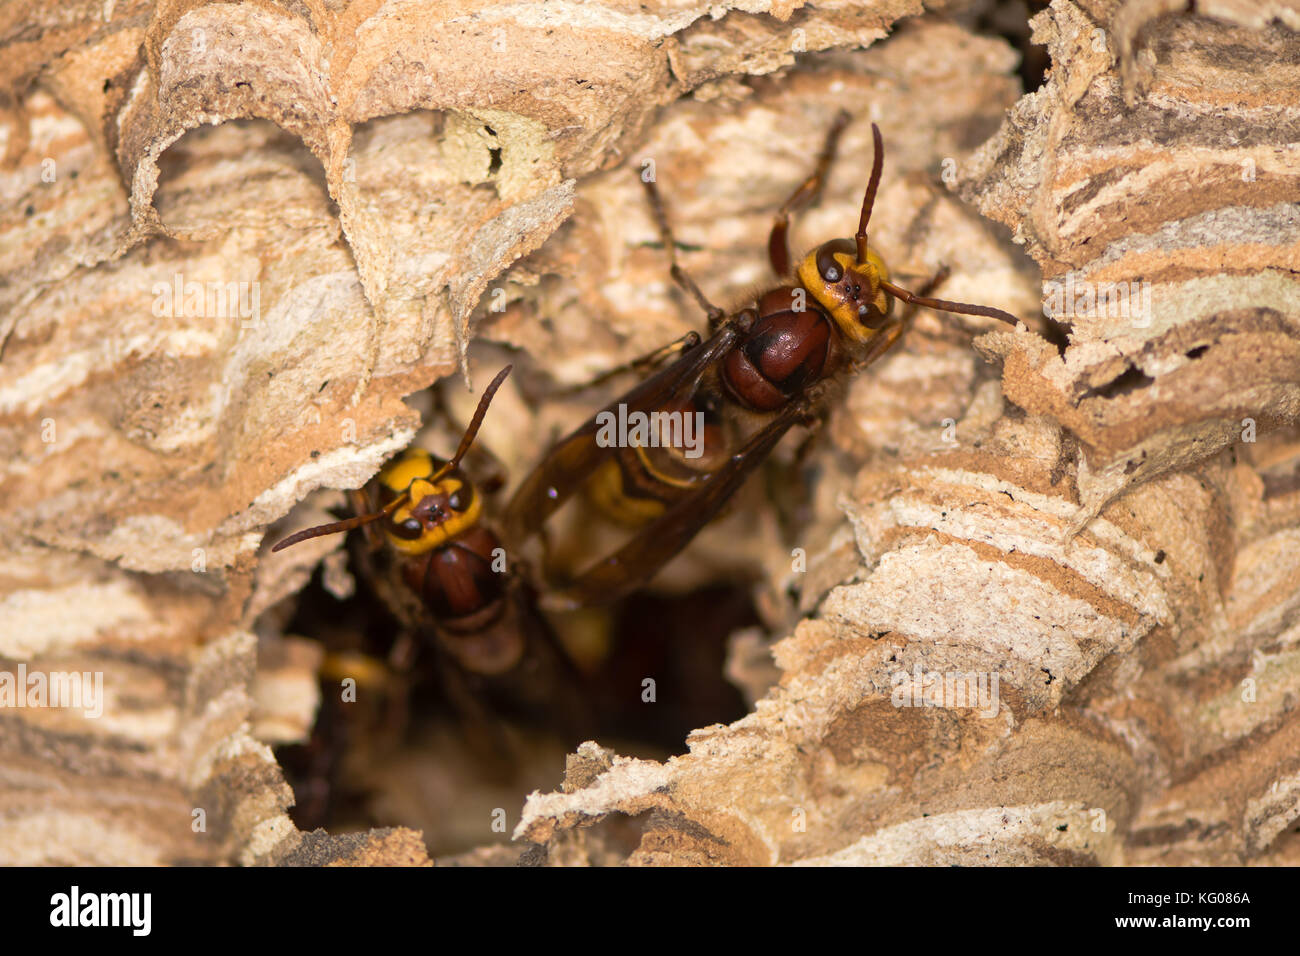 Europäische Hornissen (Vespa crabro), die aus dem Nest auftauchen. Große Wespen aktiv am Papiernest, zeigt defensives Verhalten, in Wiltshire, Großbritannien Stockfoto